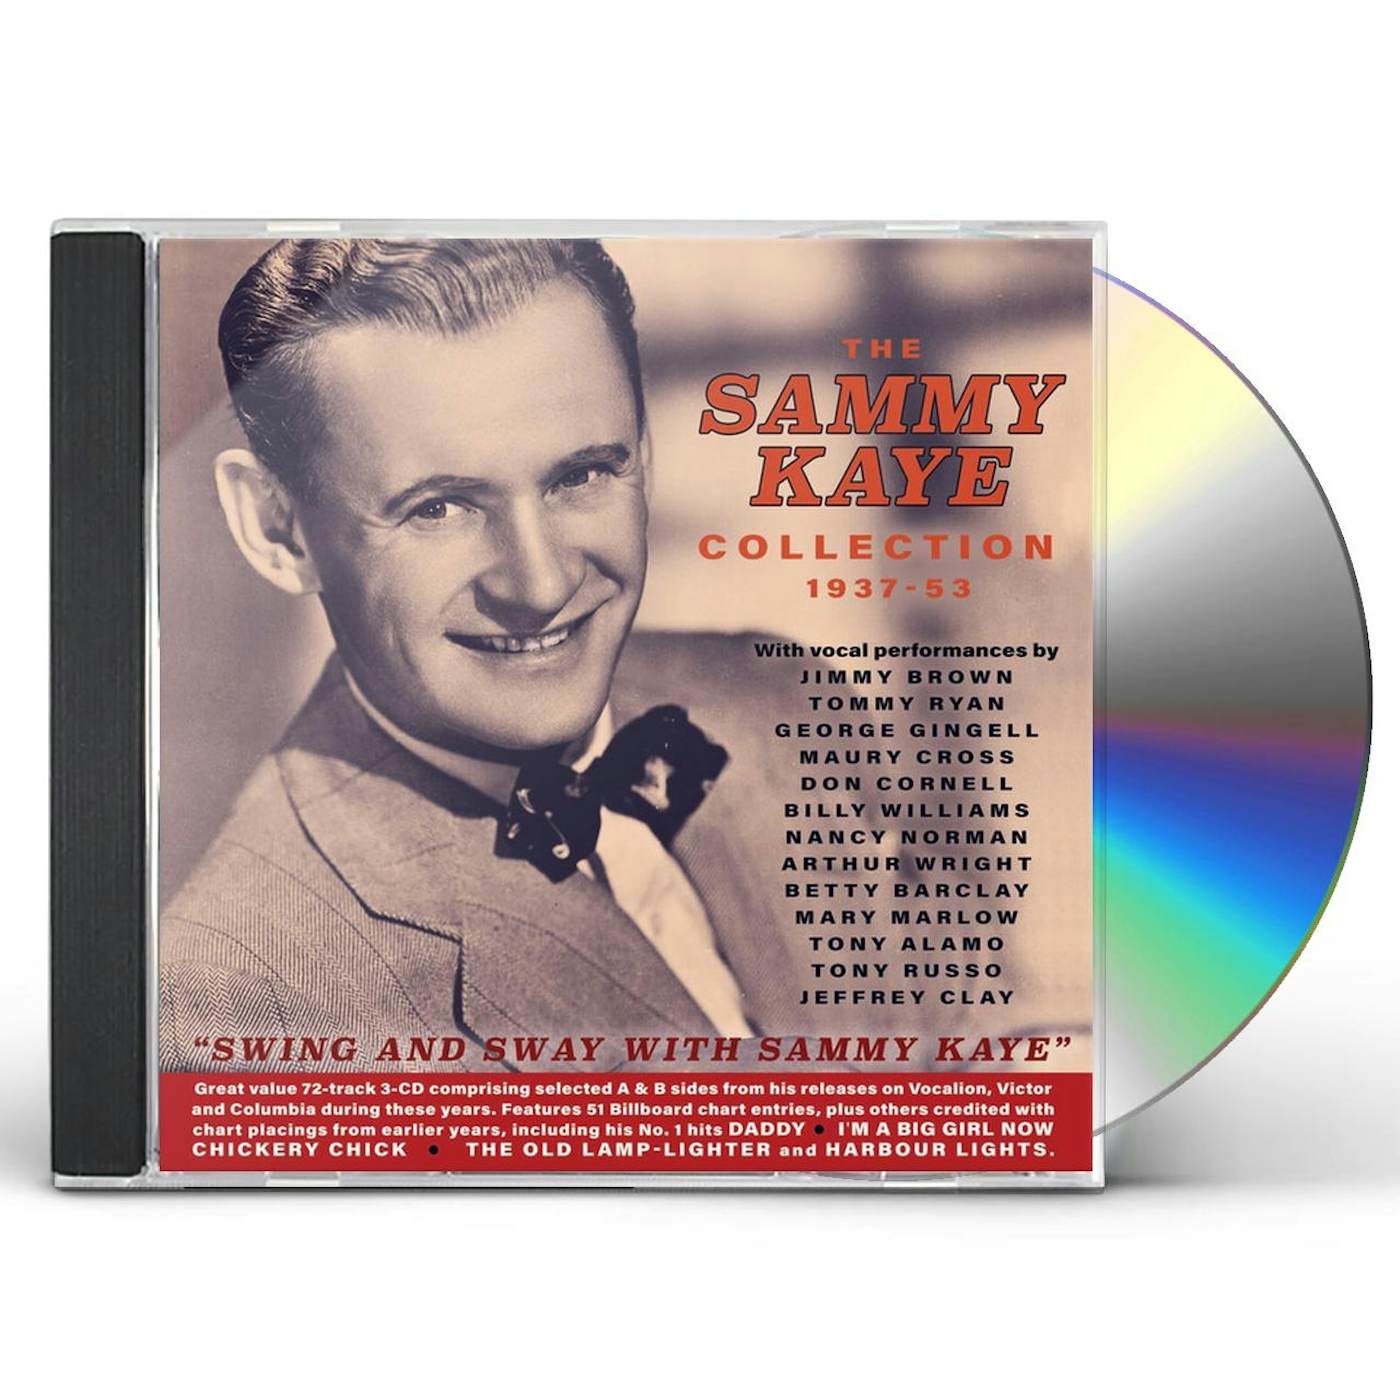 SAMMY KAYE COLLECTION 1937-53 CD